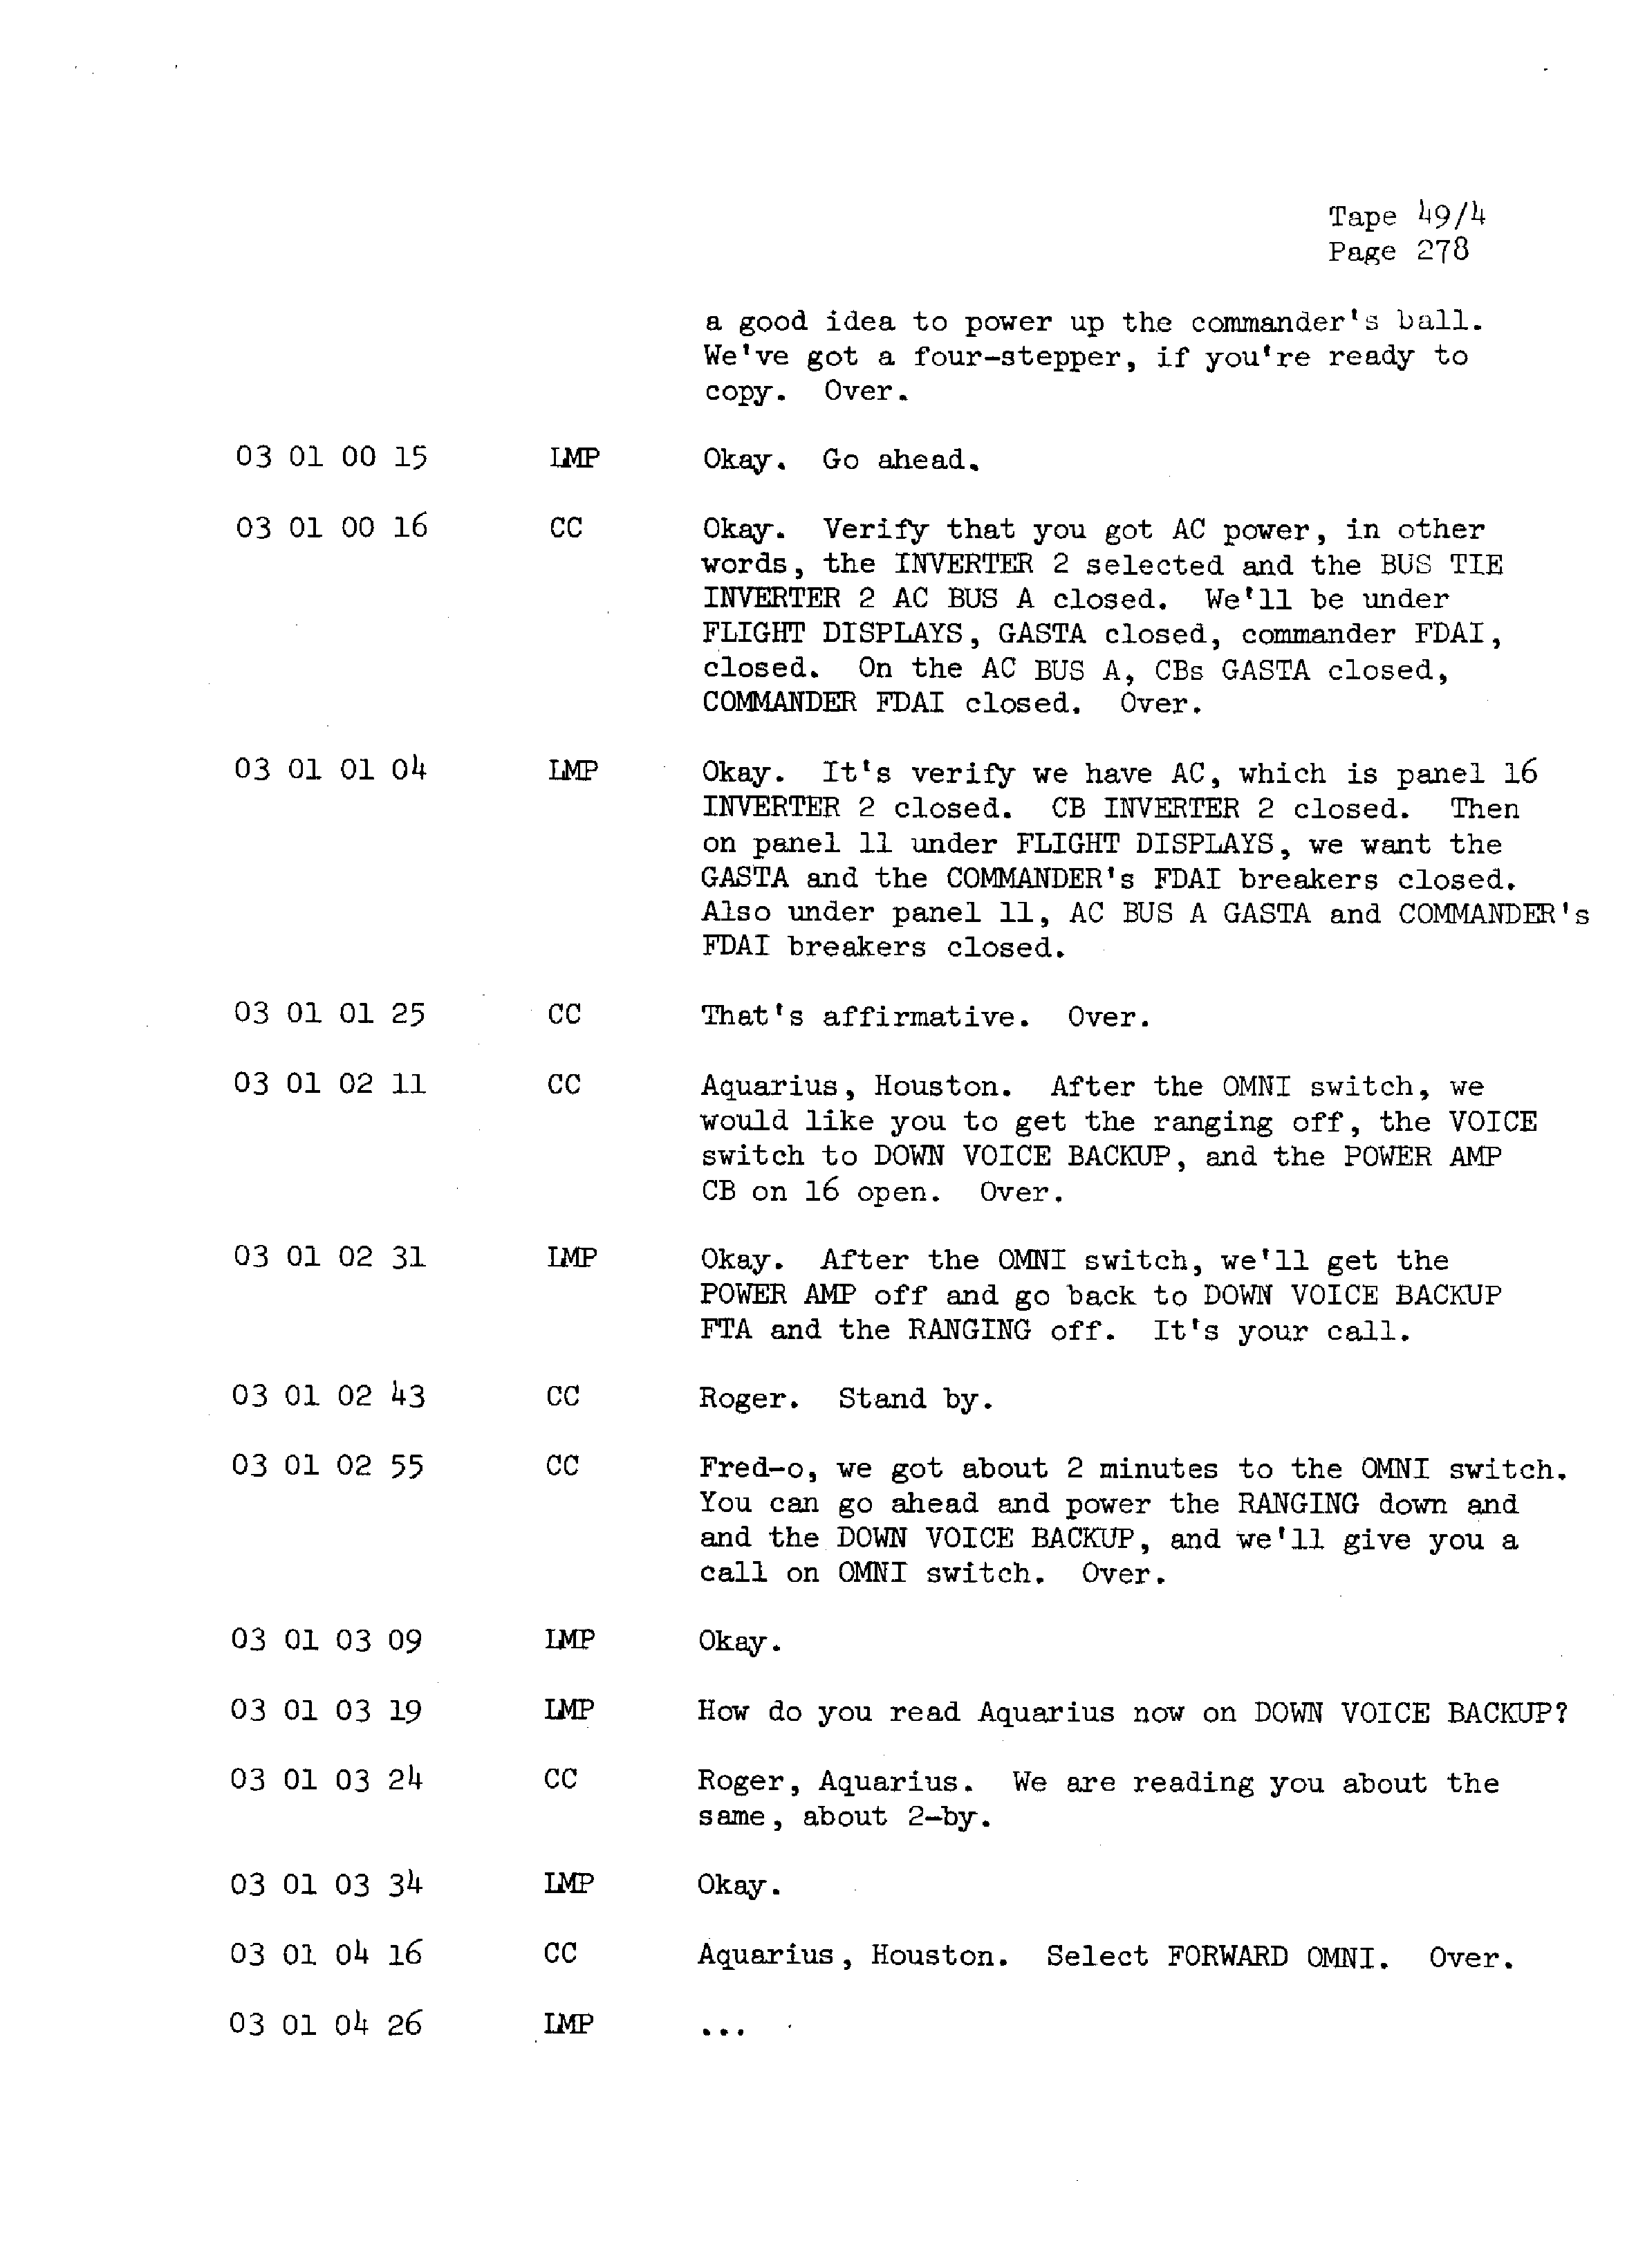 Page 285 of Apollo 13’s original transcript